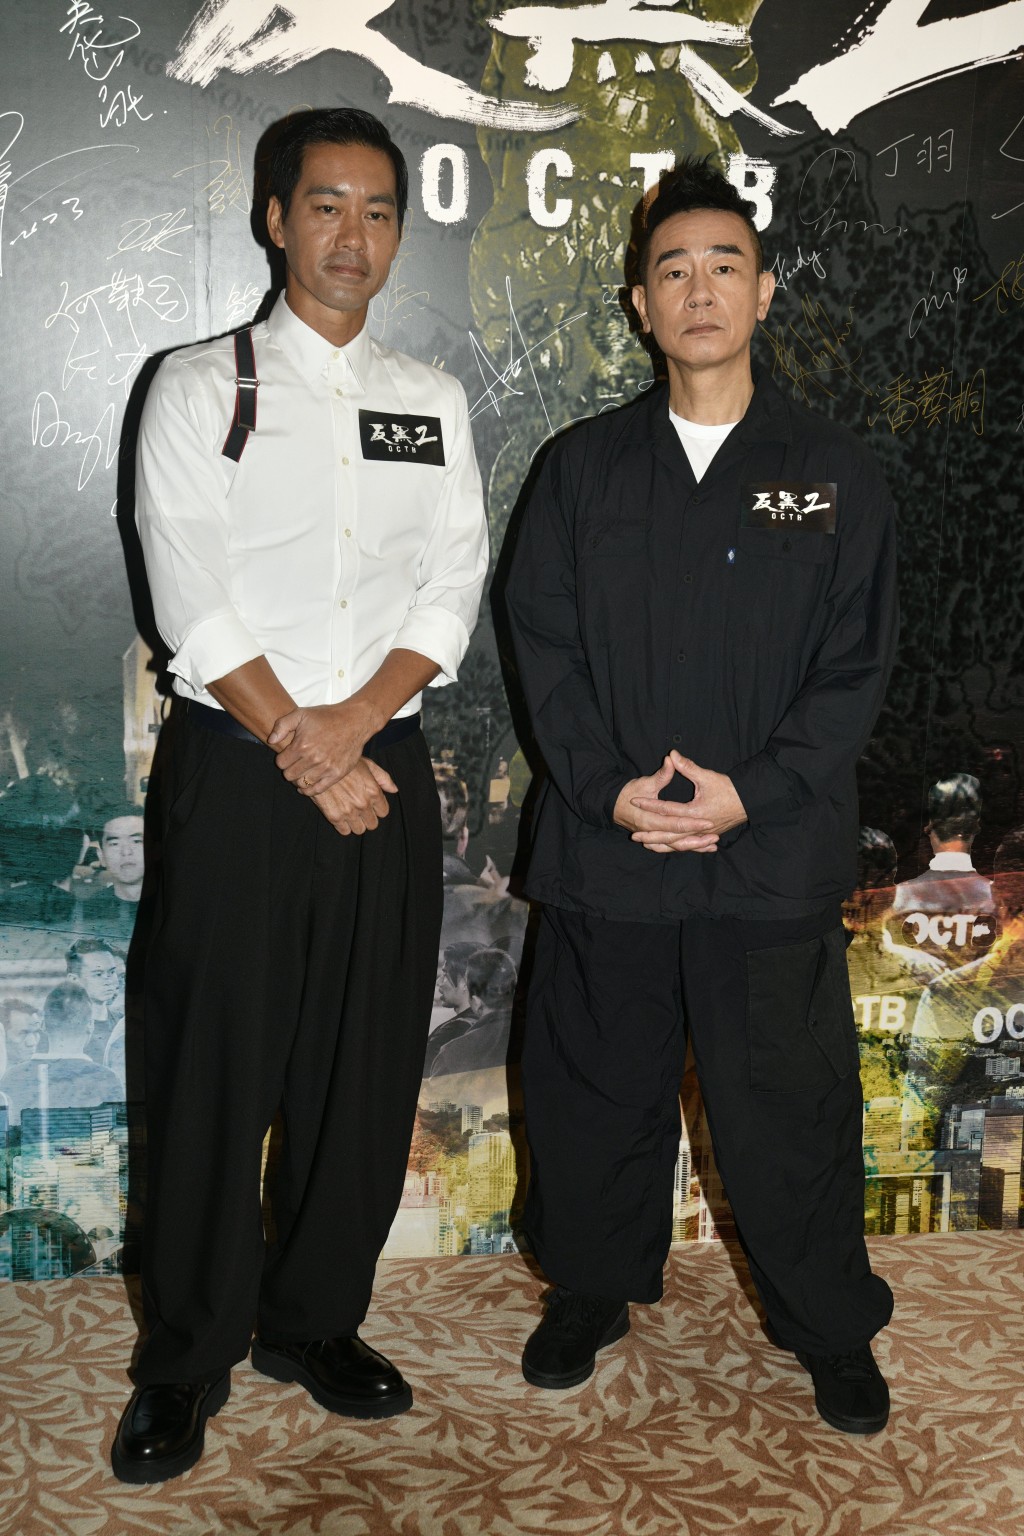 主要演員有陳國坤及陳小春等。